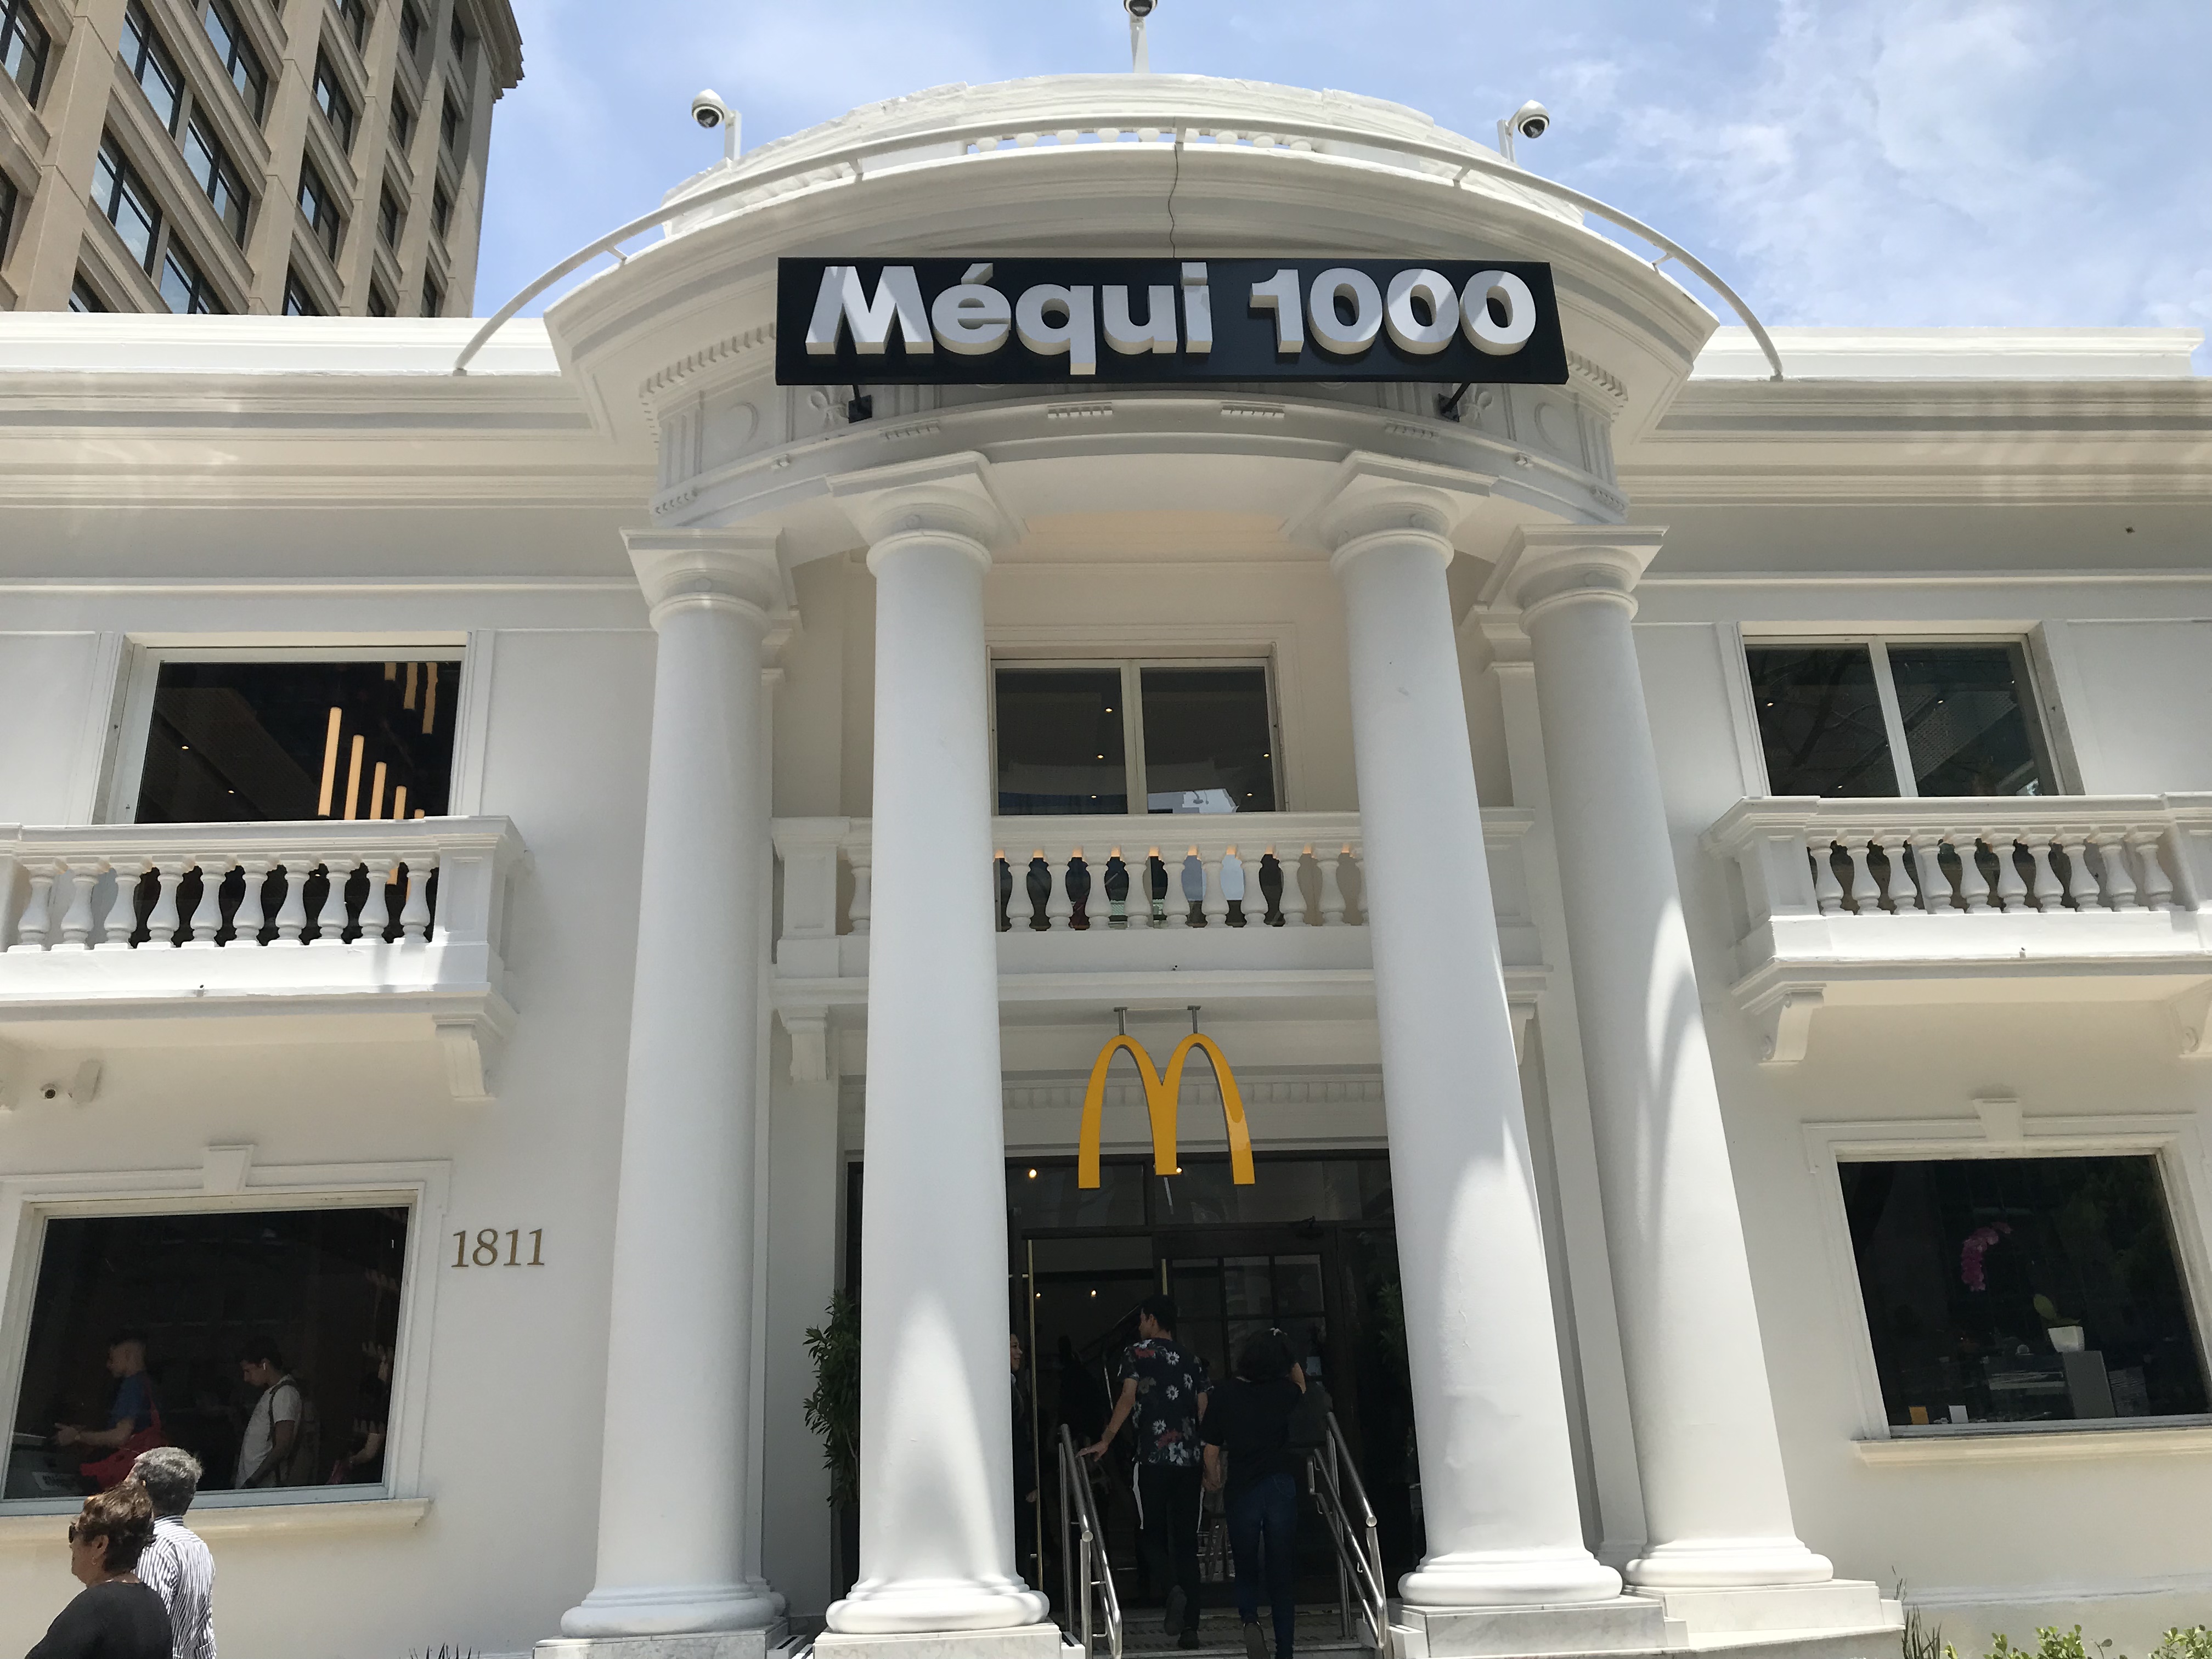 食 ブラジル1000店舗目のマクドナルド Mequi 1000が誕生 限定メニューは バンズがポン デ ケージョ 令和うさぎ合戦ぴょんぴょ子